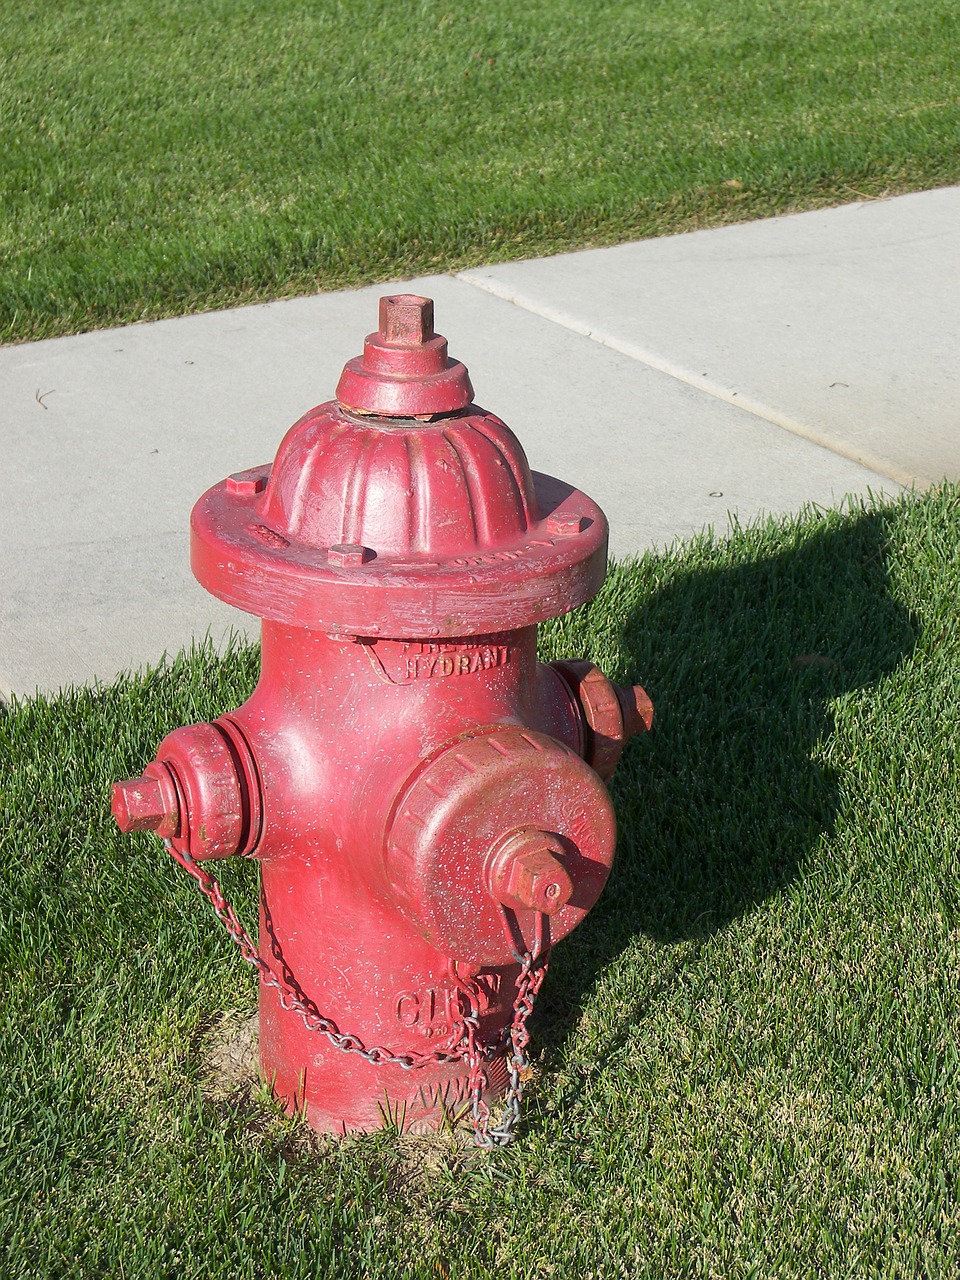 fire hydrant hydrant valve free photo